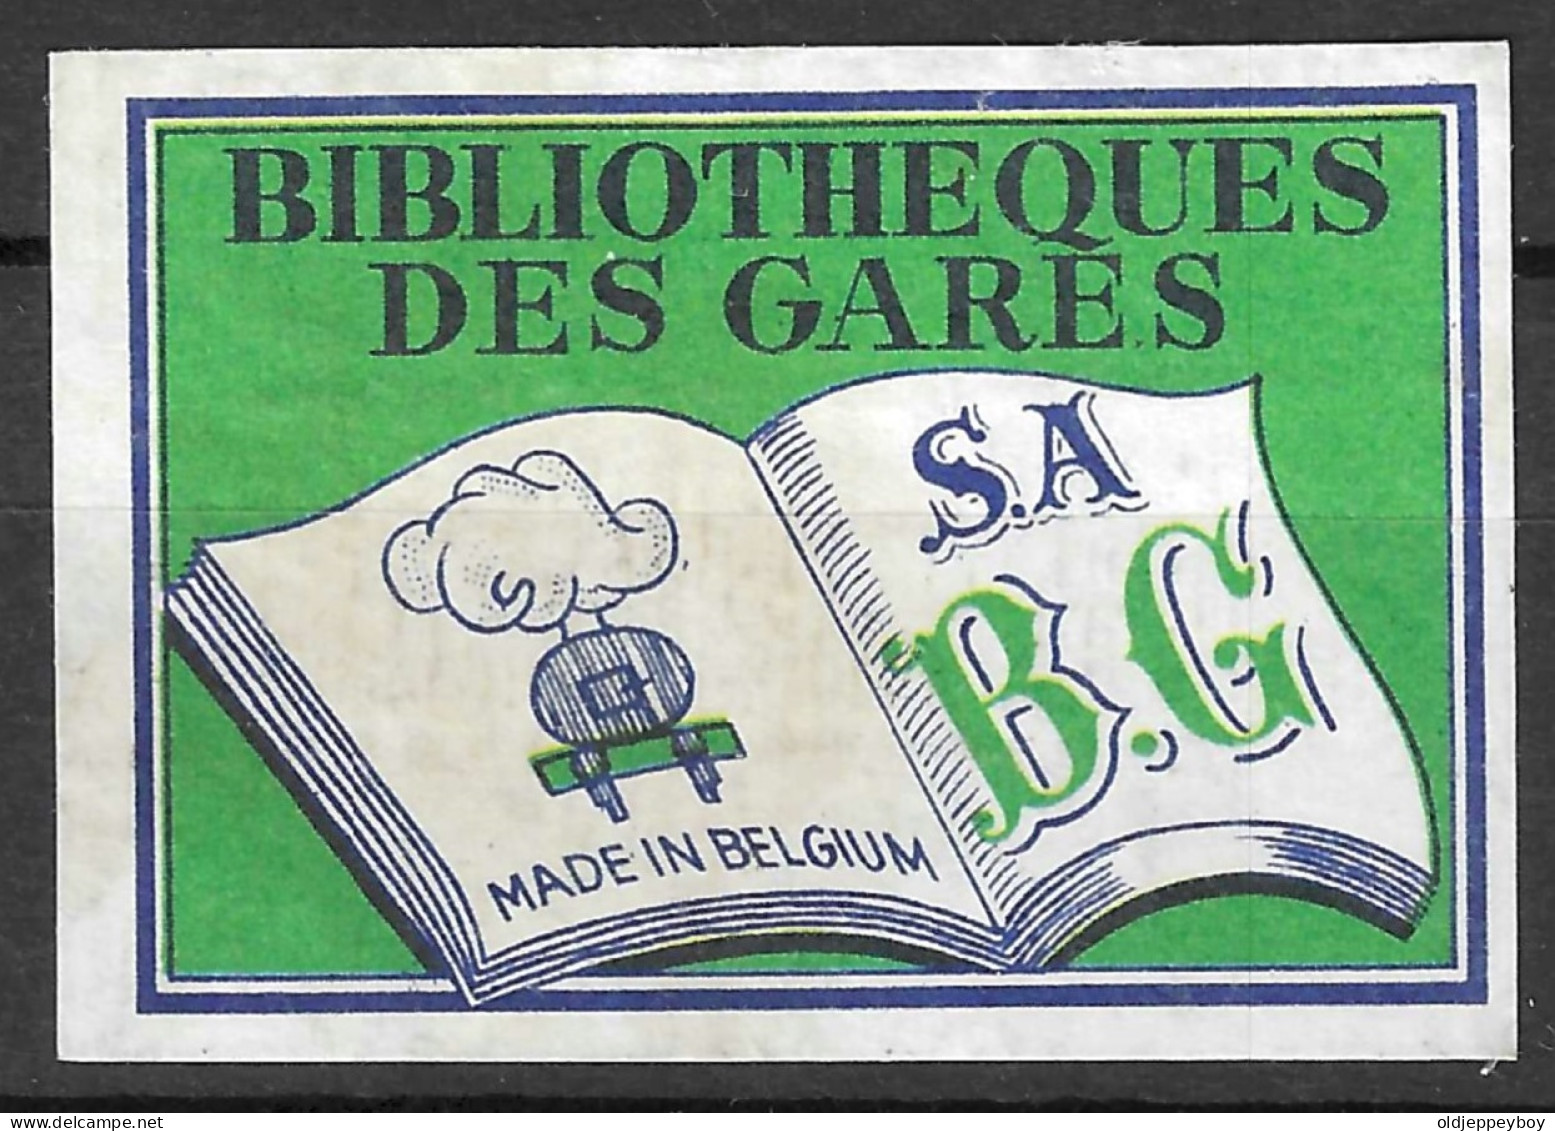  VINTAGE MATCHBOX LABEL BELGIUM BIBLIOTHEQUES DES GARES   5  X 3.5  Cm  - Matchbox Labels